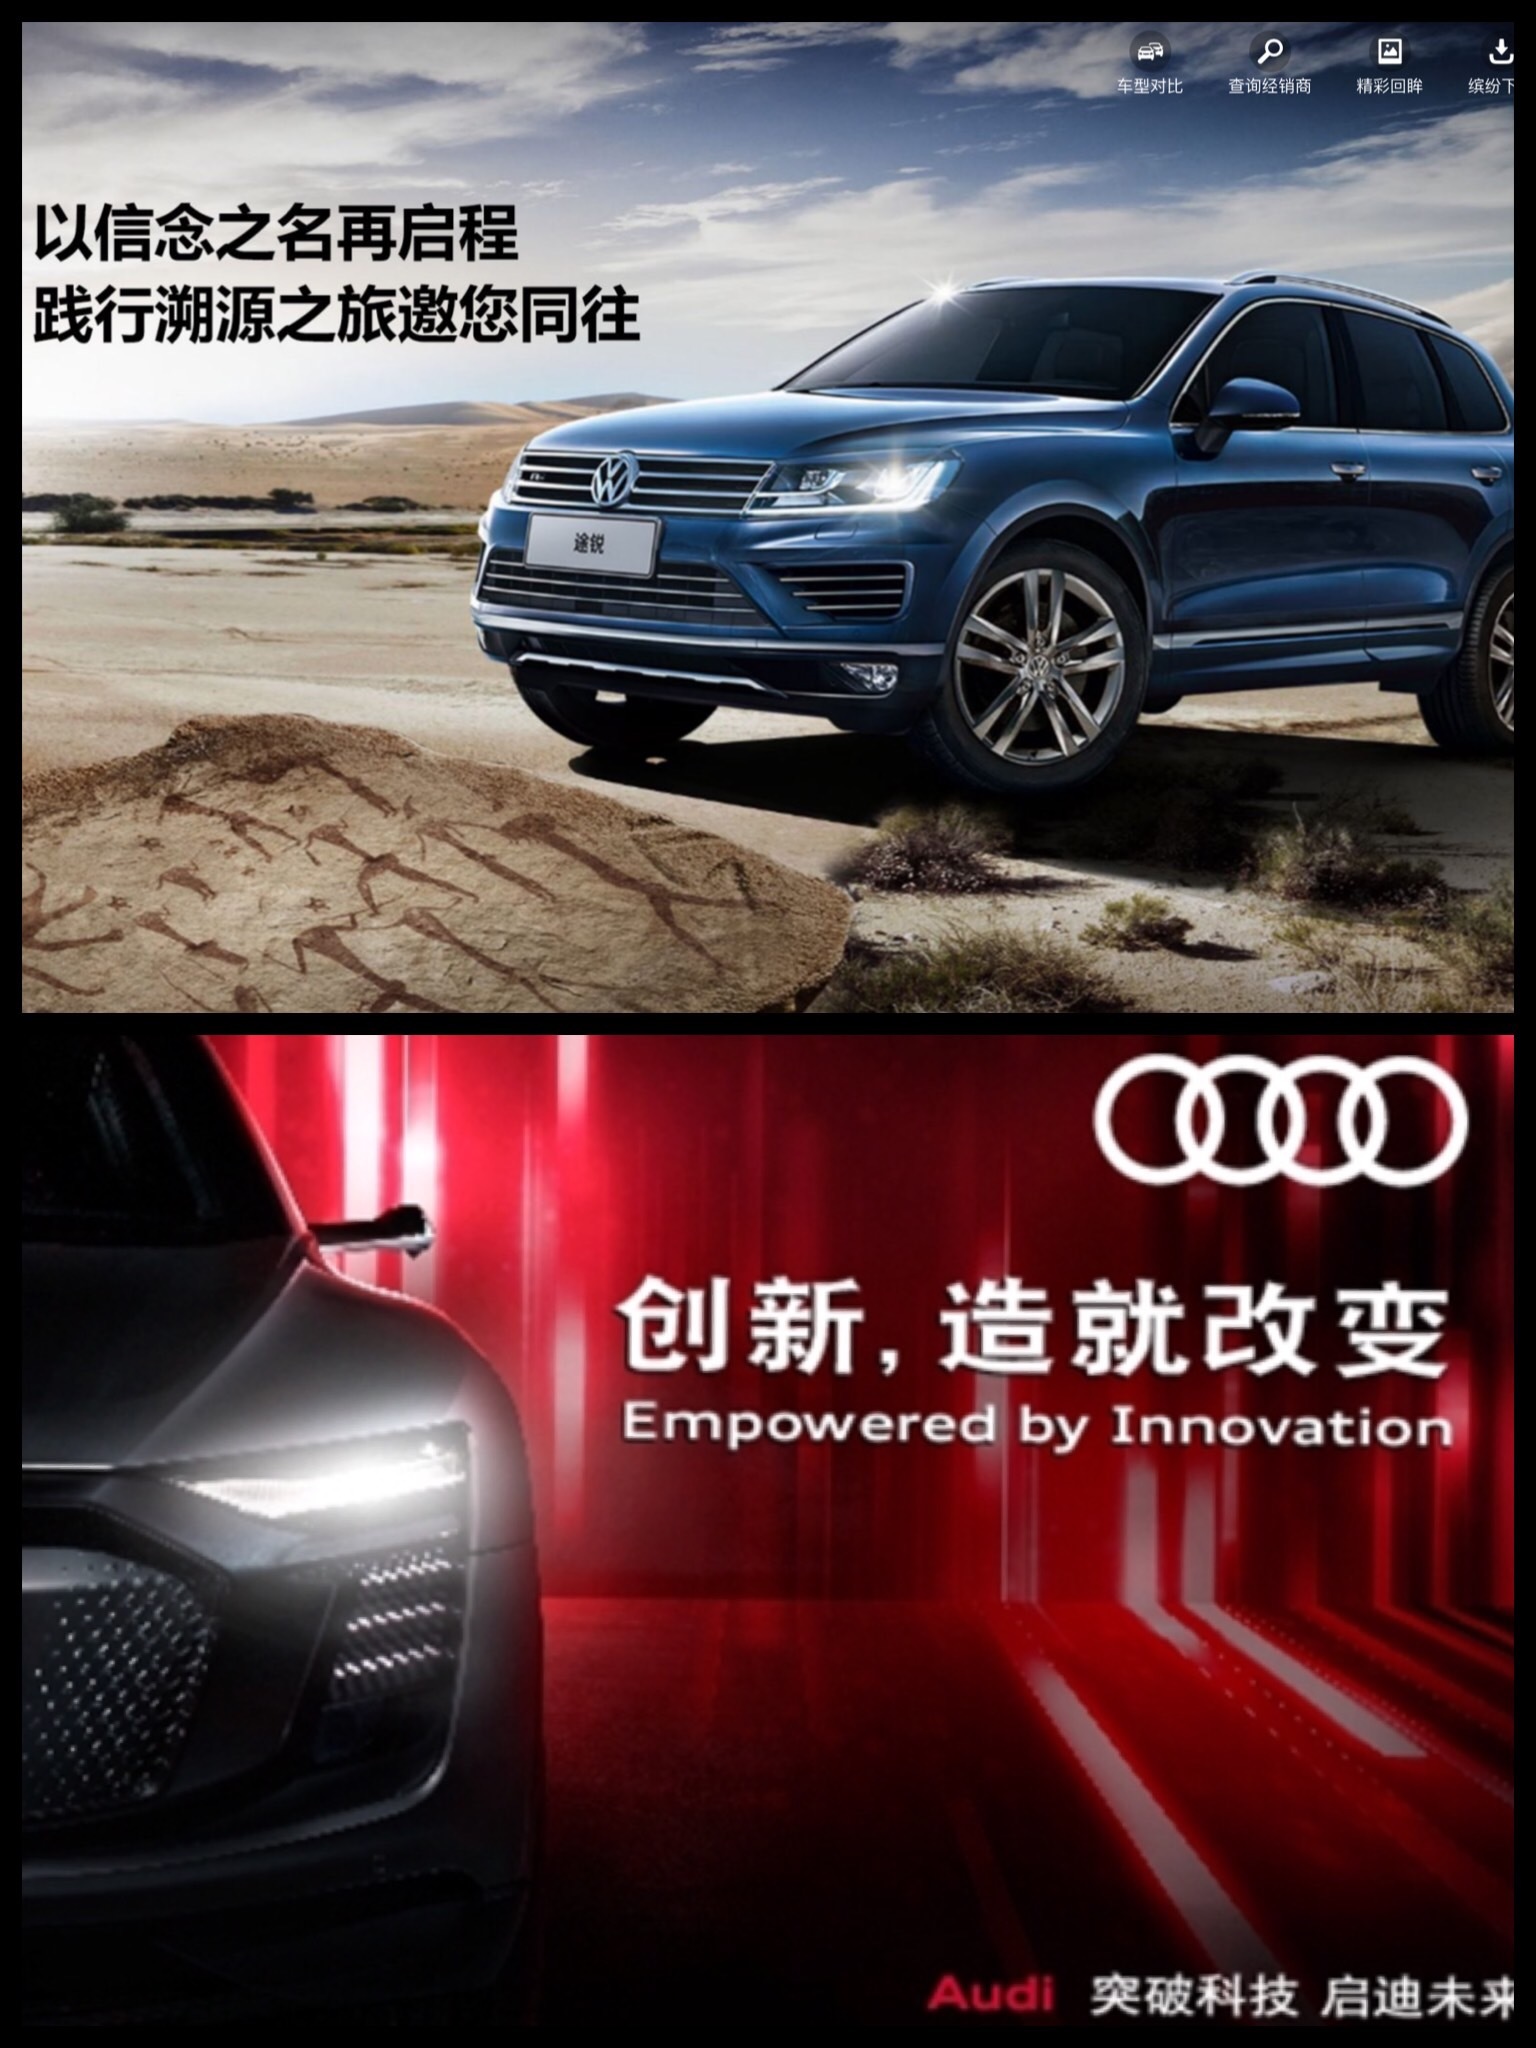 中国 上海クルマ事情 VW Audi